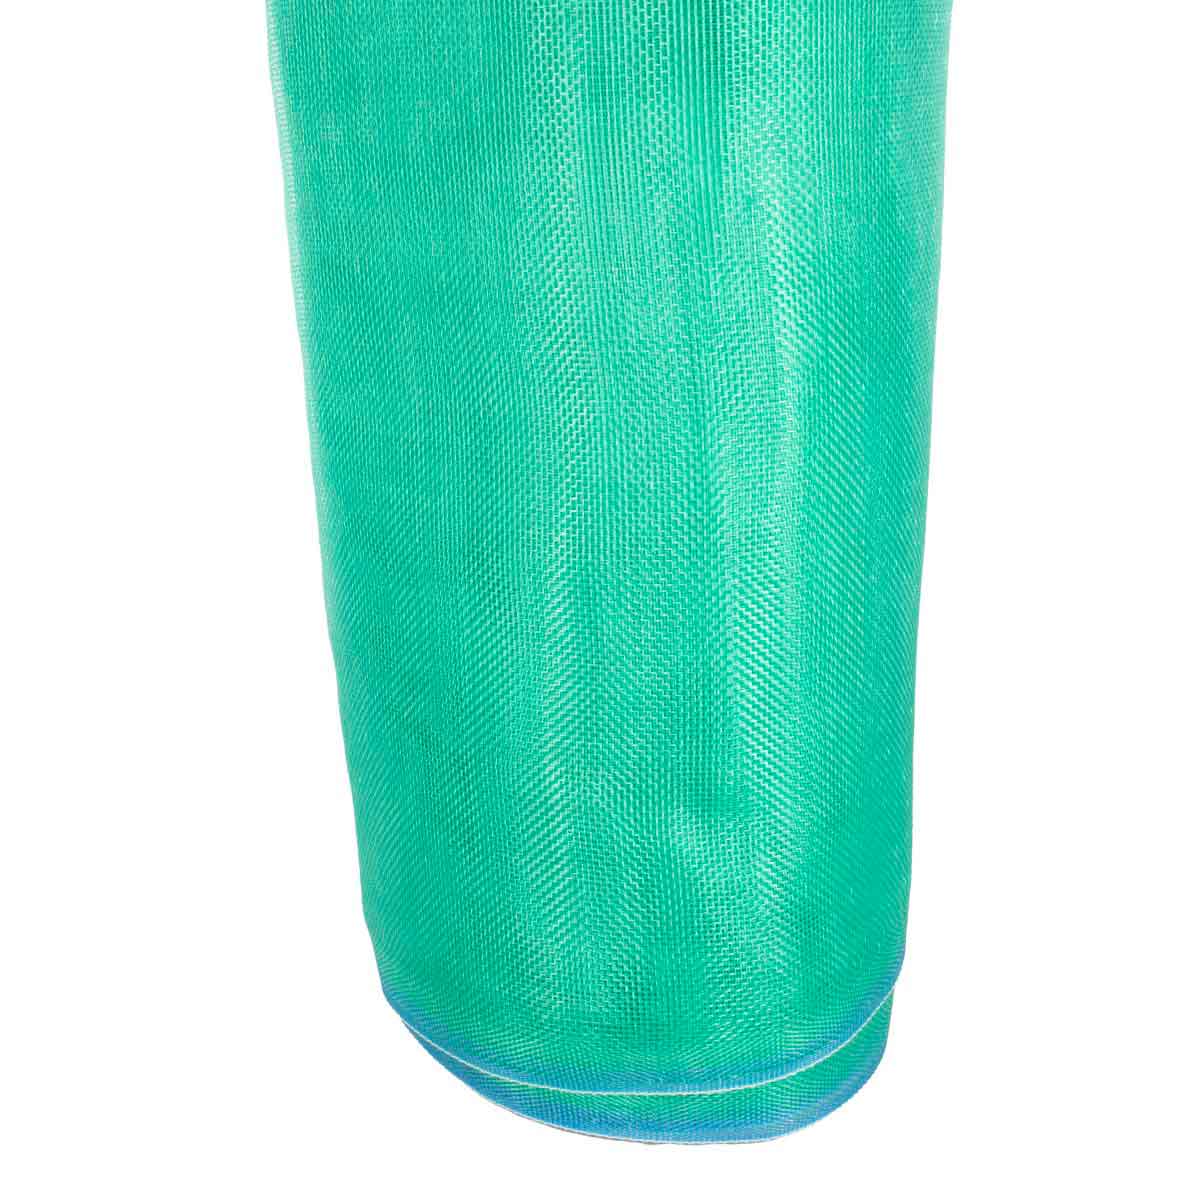 Tela Mosquitera De Plastico Verde 30 M x 120 cm Cal 12 Leon - Ferreabasto